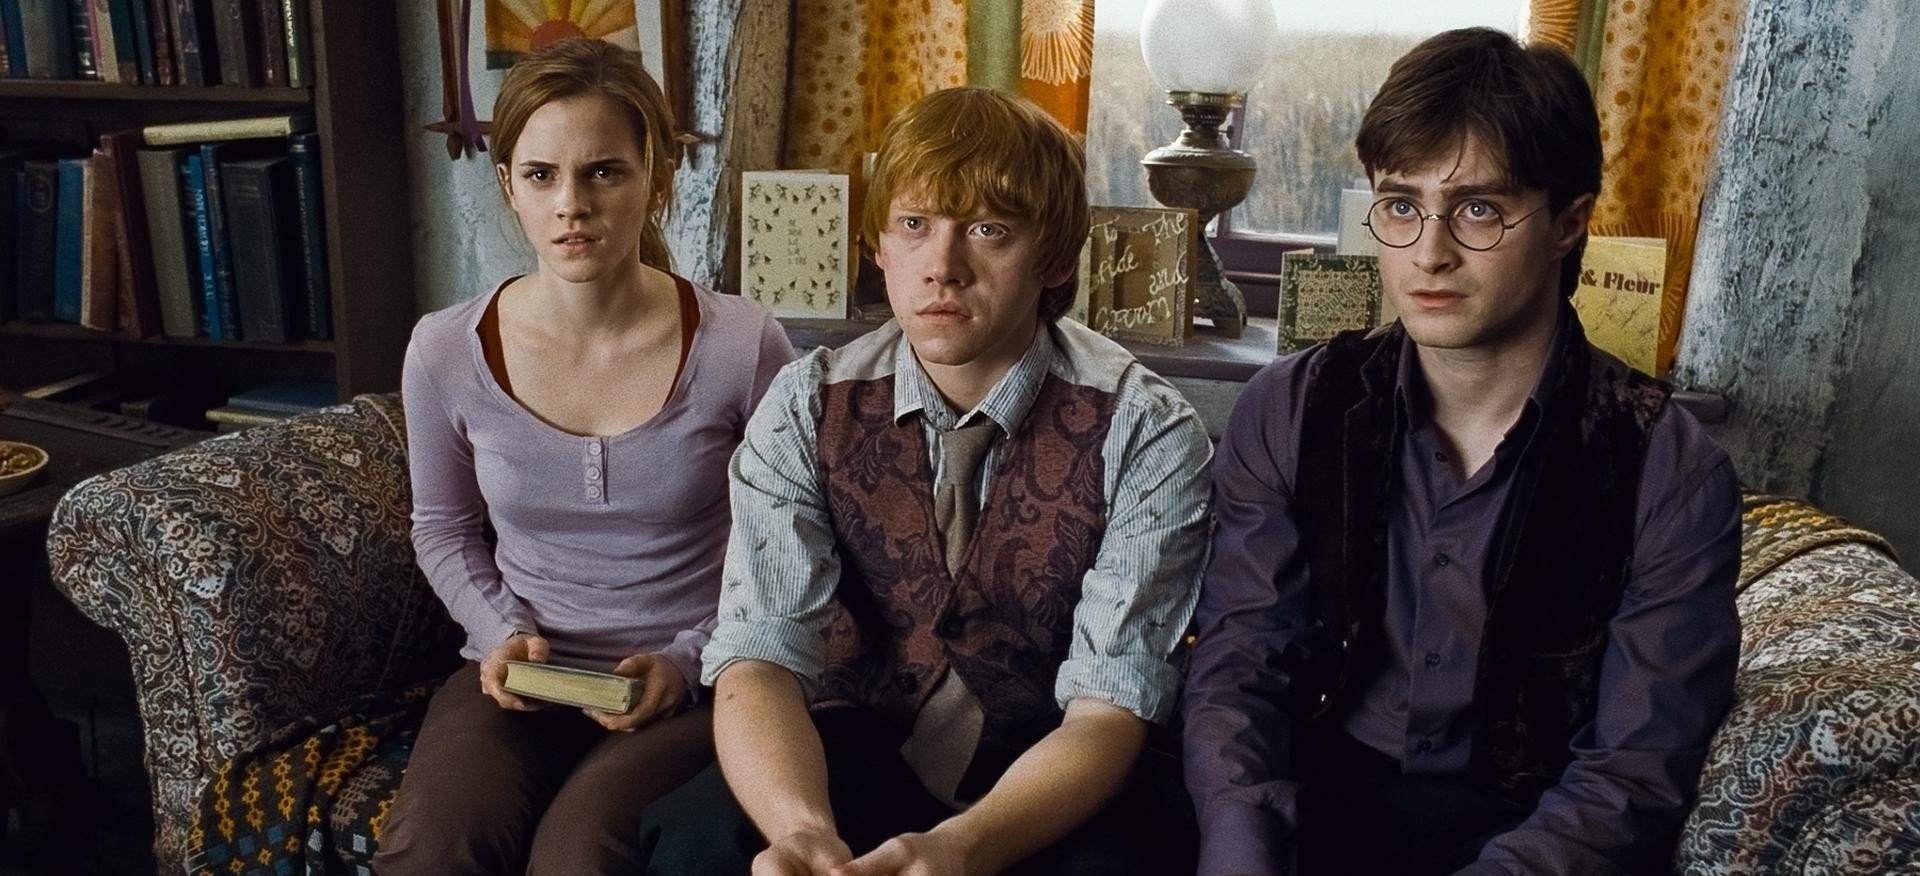 Rupert Grint y posible serie de Harry Potter: "Sería extraño si fuera una especie de continuación"